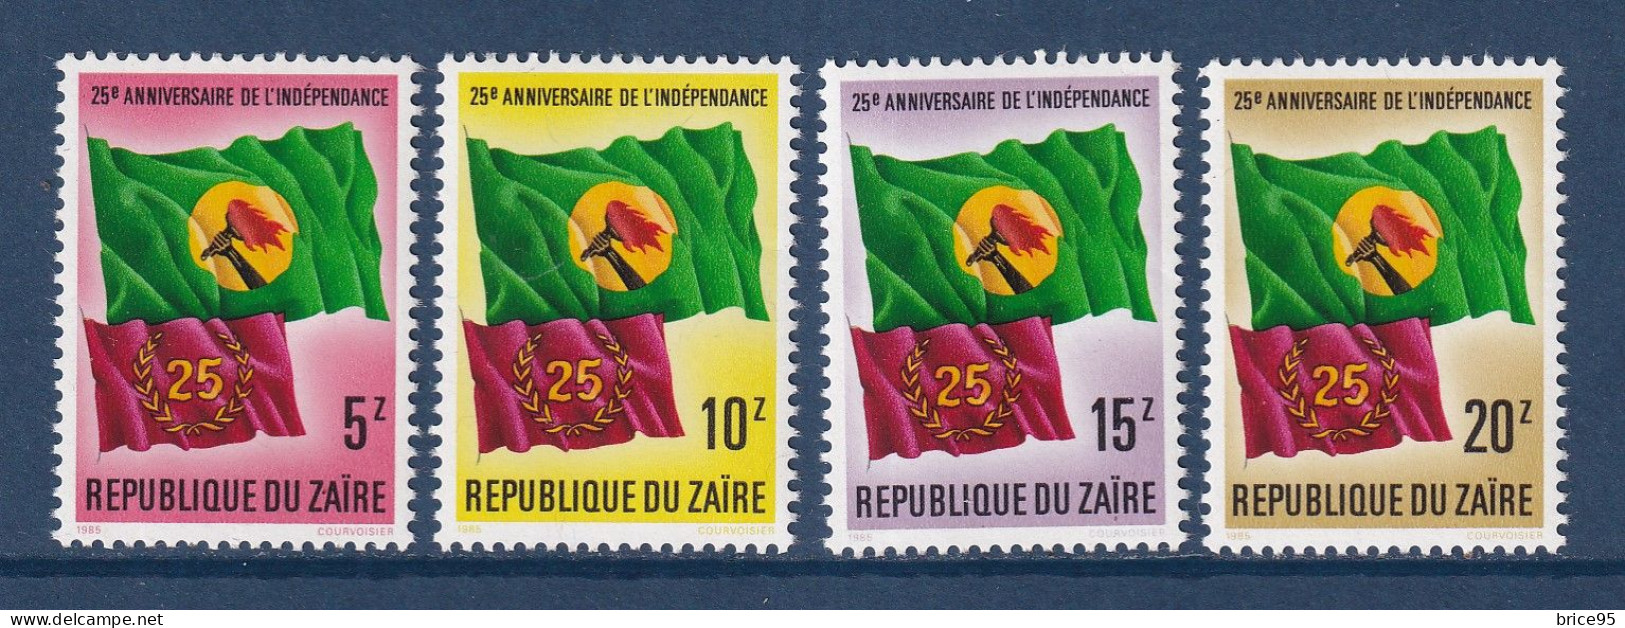 Zaïre - YT N° 1212 à 1215 ** - Neuf Sans Charnière - 1985 - Unused Stamps